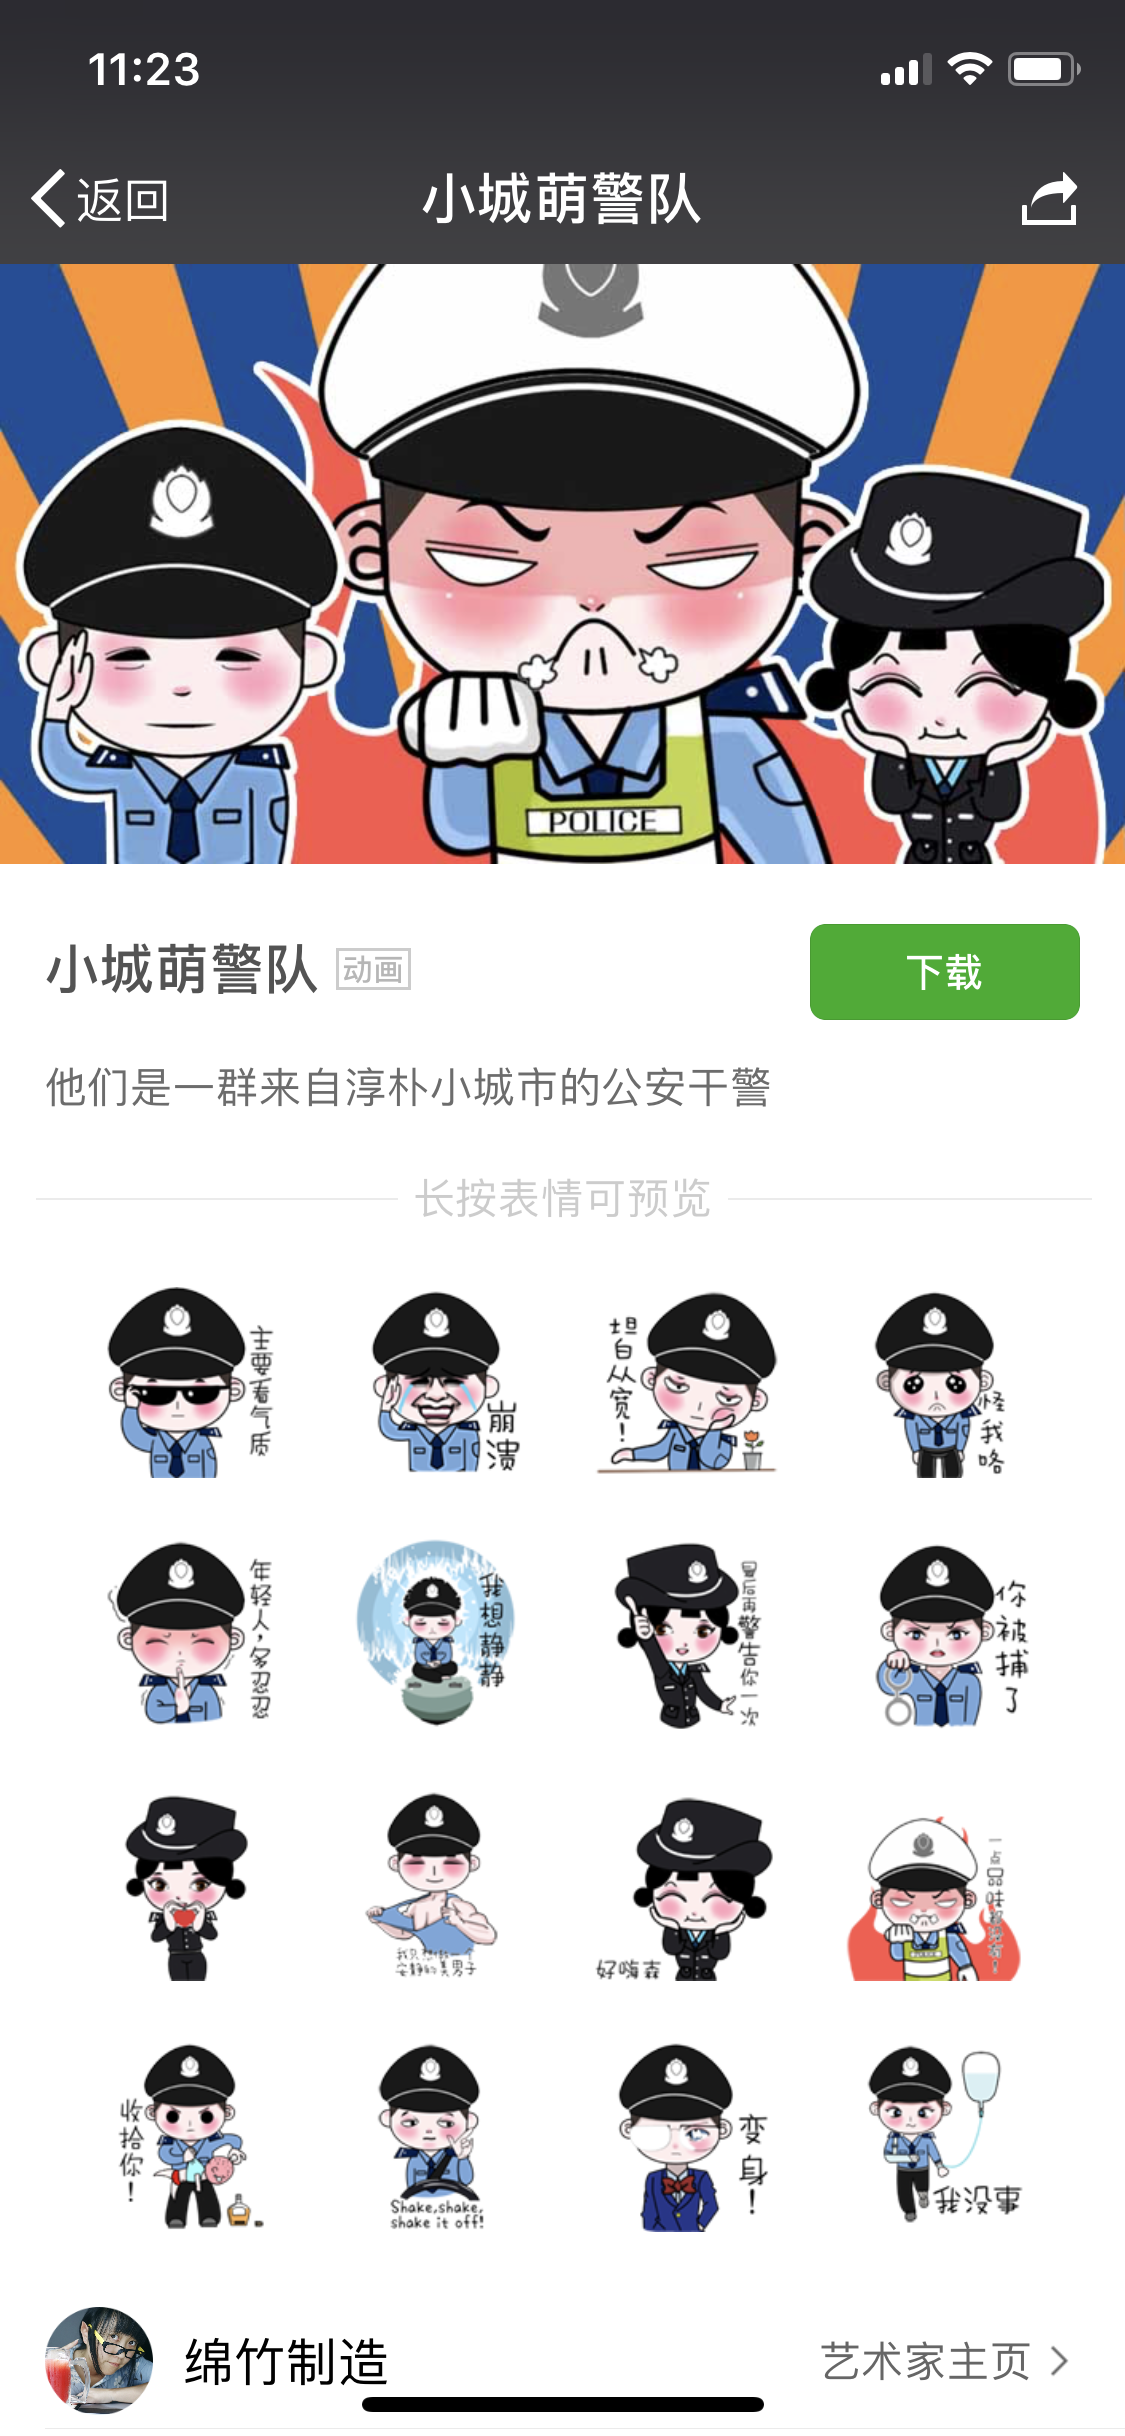 绵竹警方送出年画警察表情包 上线收获大量粉丝